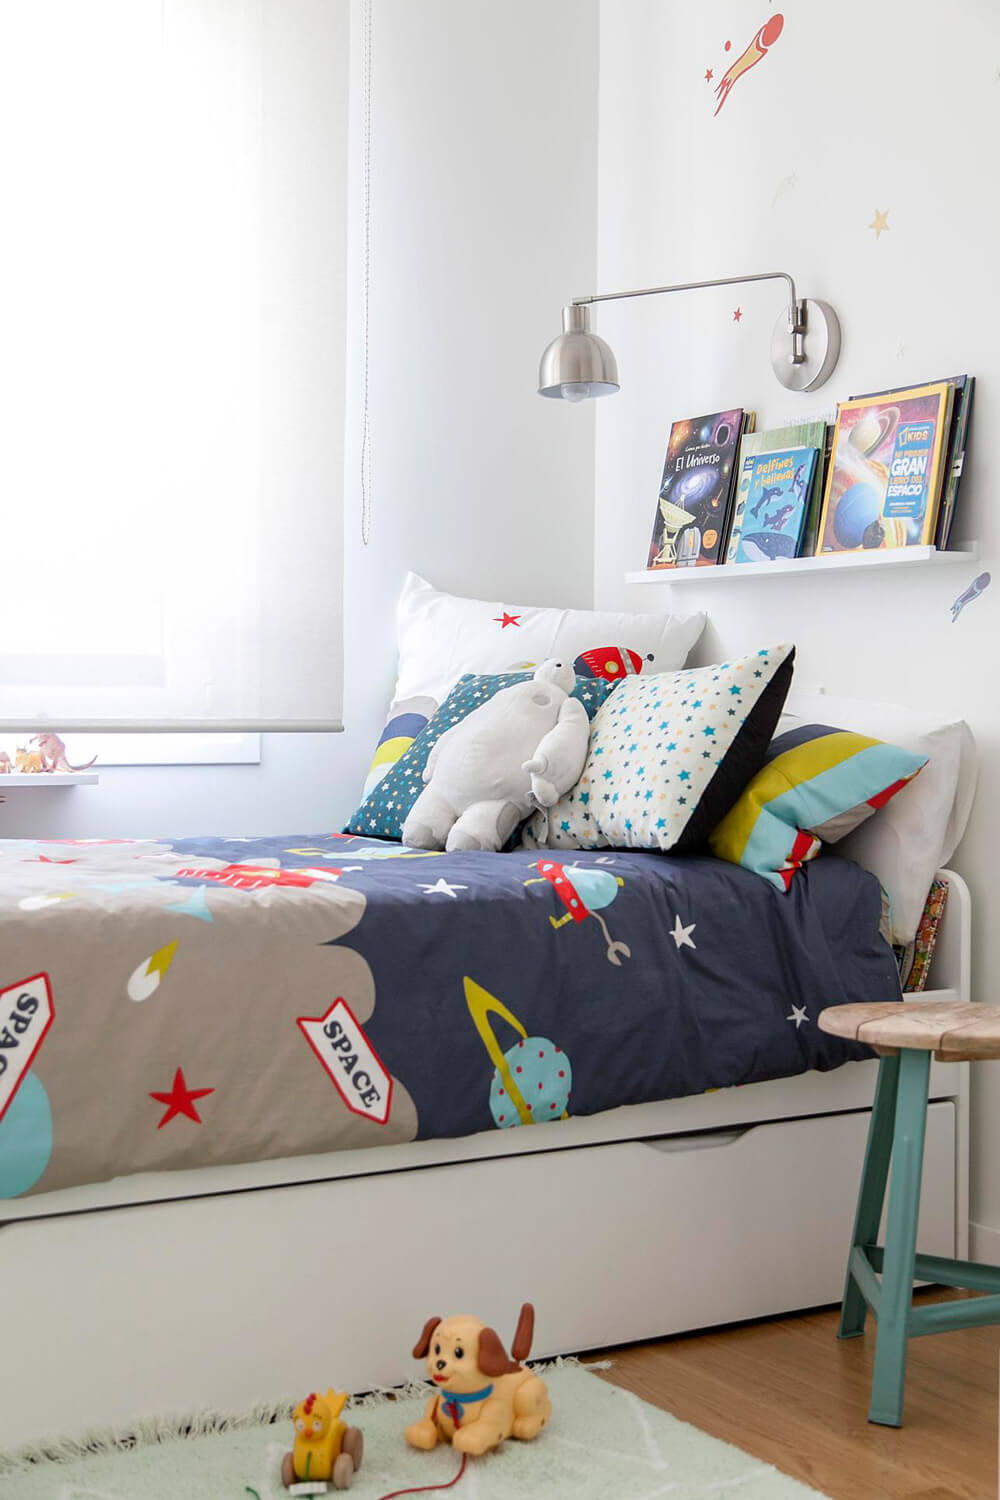 Proyecto de R de Room Amazing Homes. Dormitorio infantil con cama nido blanca y decoración inspirada en el universo.